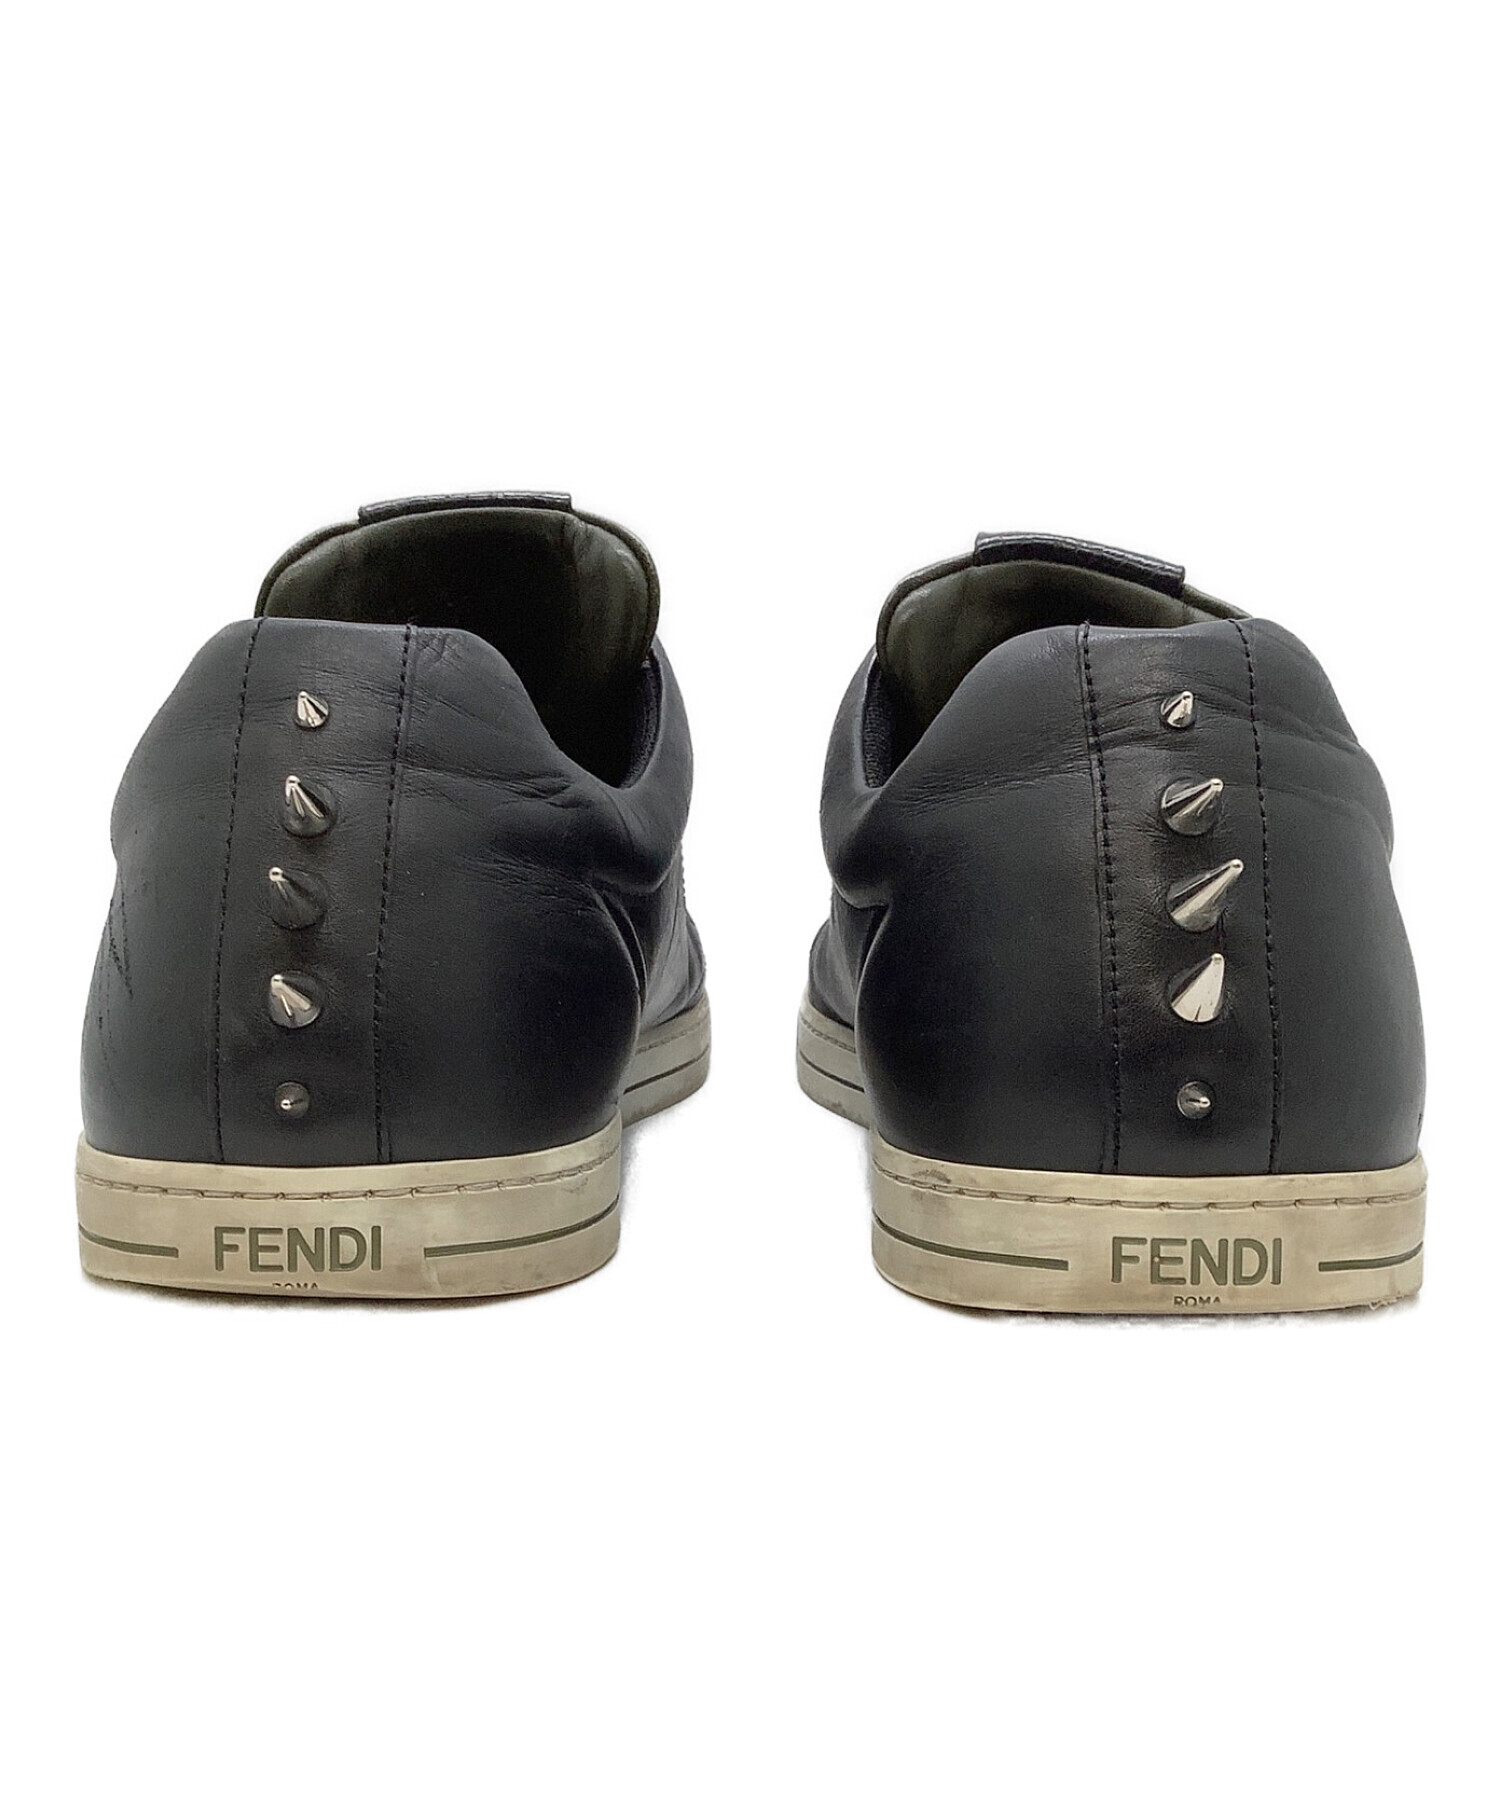 FENDI フェンディ ブーツ UK9(27.5cm位) 黒ロングブーツカット